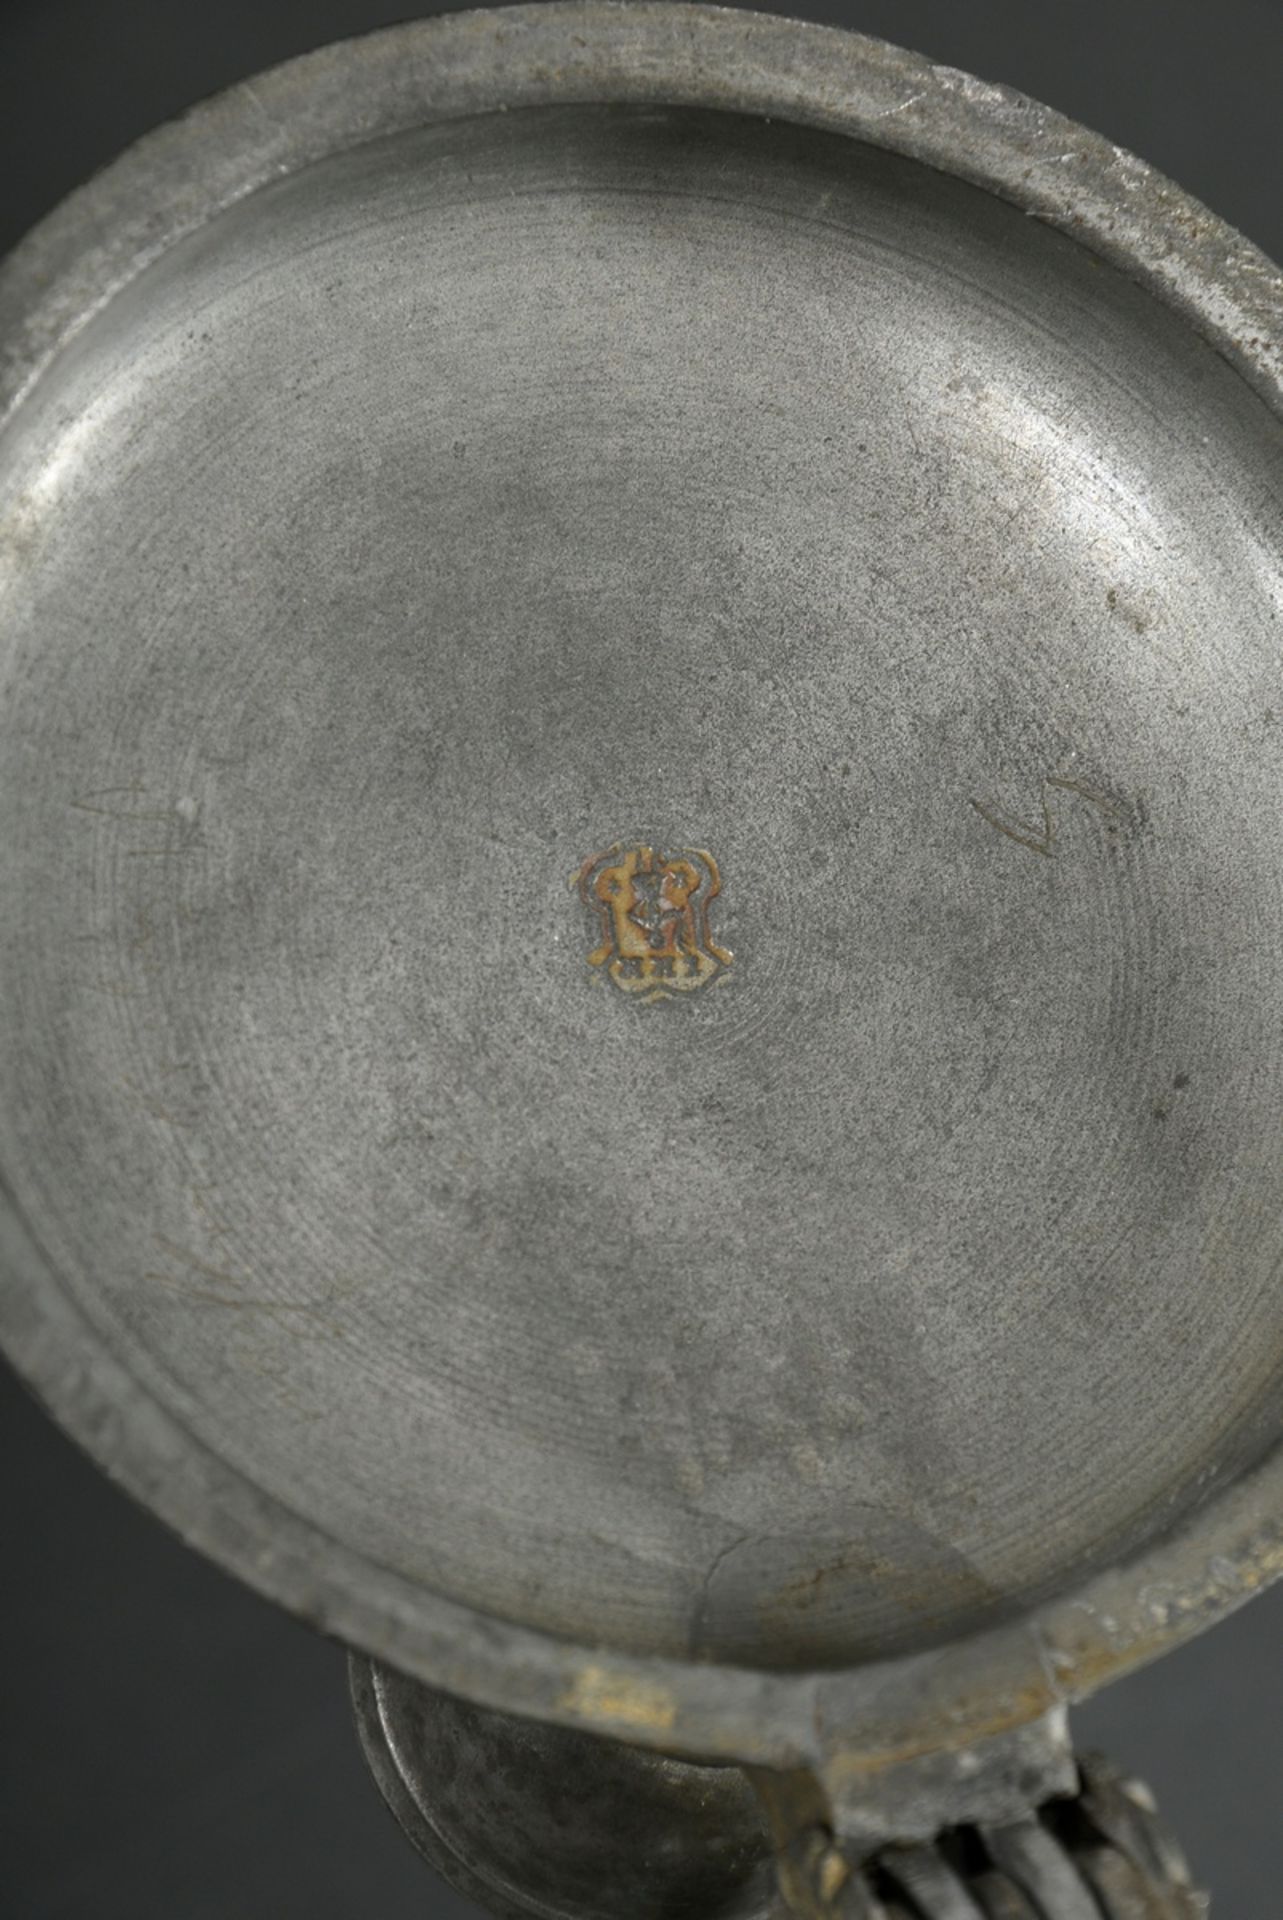 Schrezheimer Walzenkrug in Zylinderform mit Ohrenhenkel, Fayence weiß glasiert mit feiner Scharffeu - Bild 7 aus 10